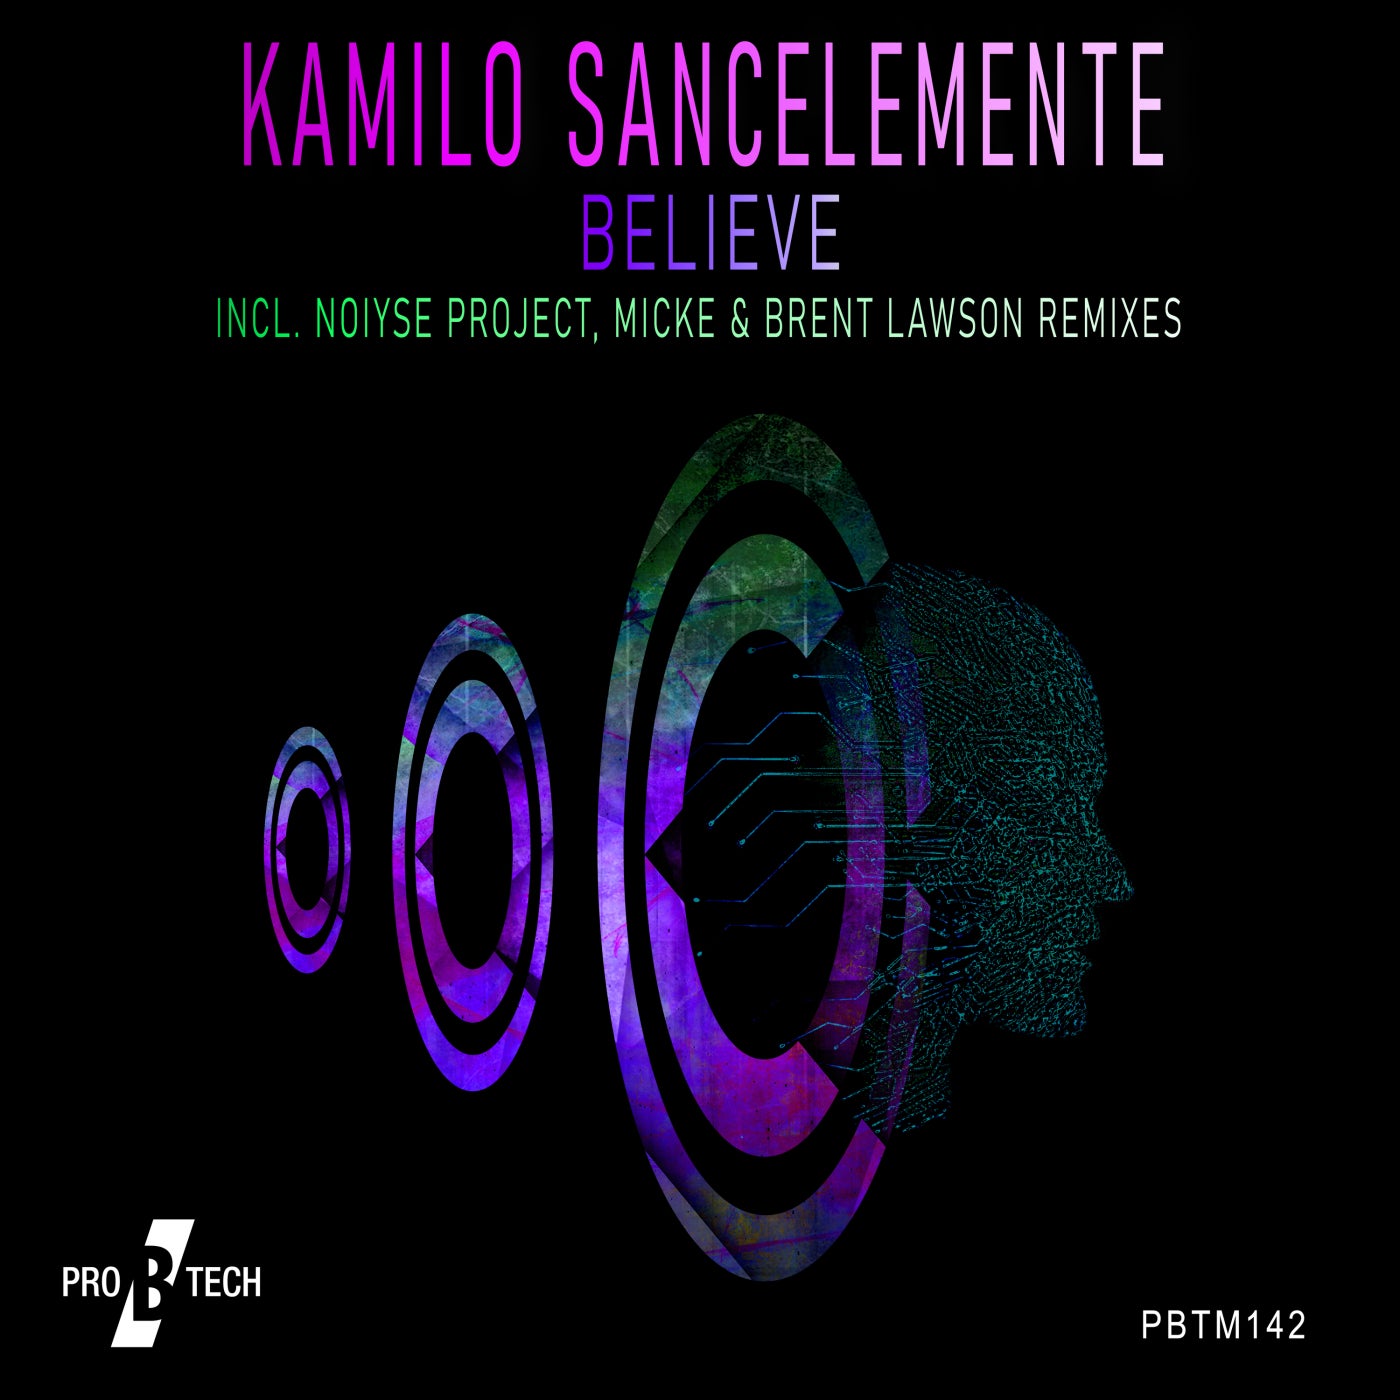 Kamilo Sancelemente - Believe